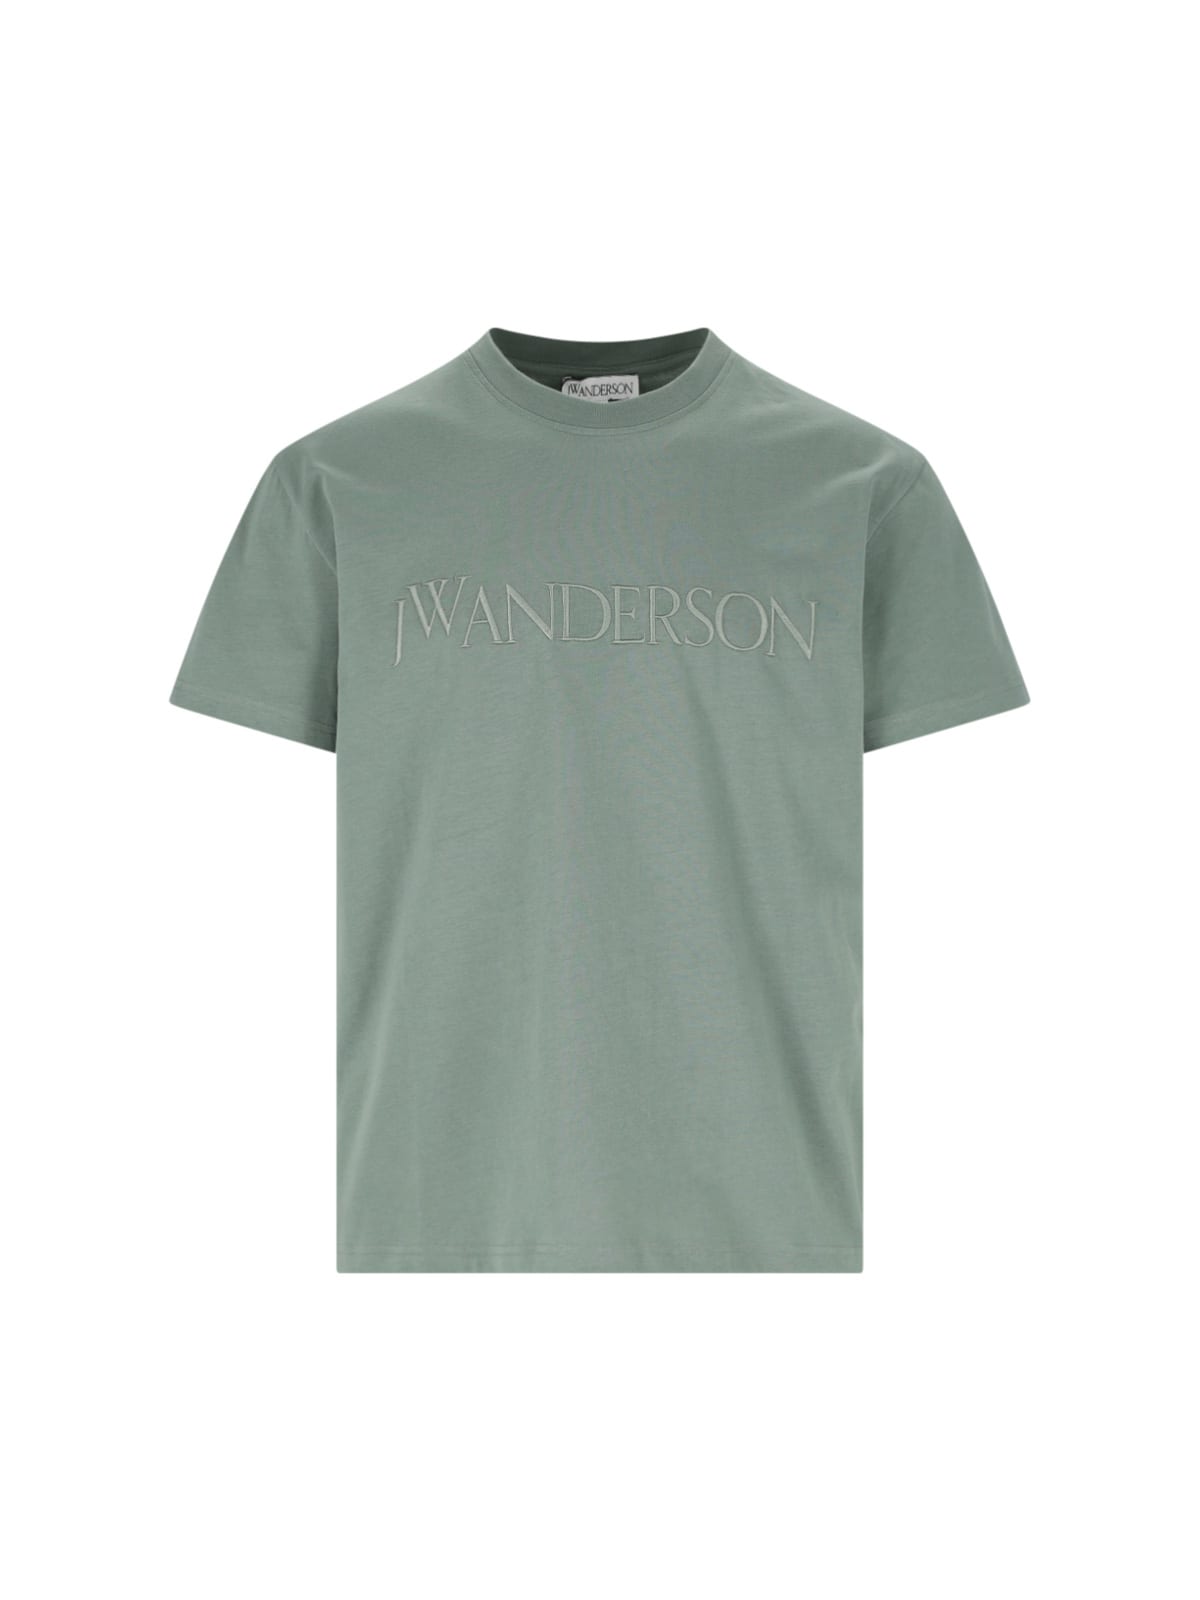 J.W. Anderson Logo T-shirt